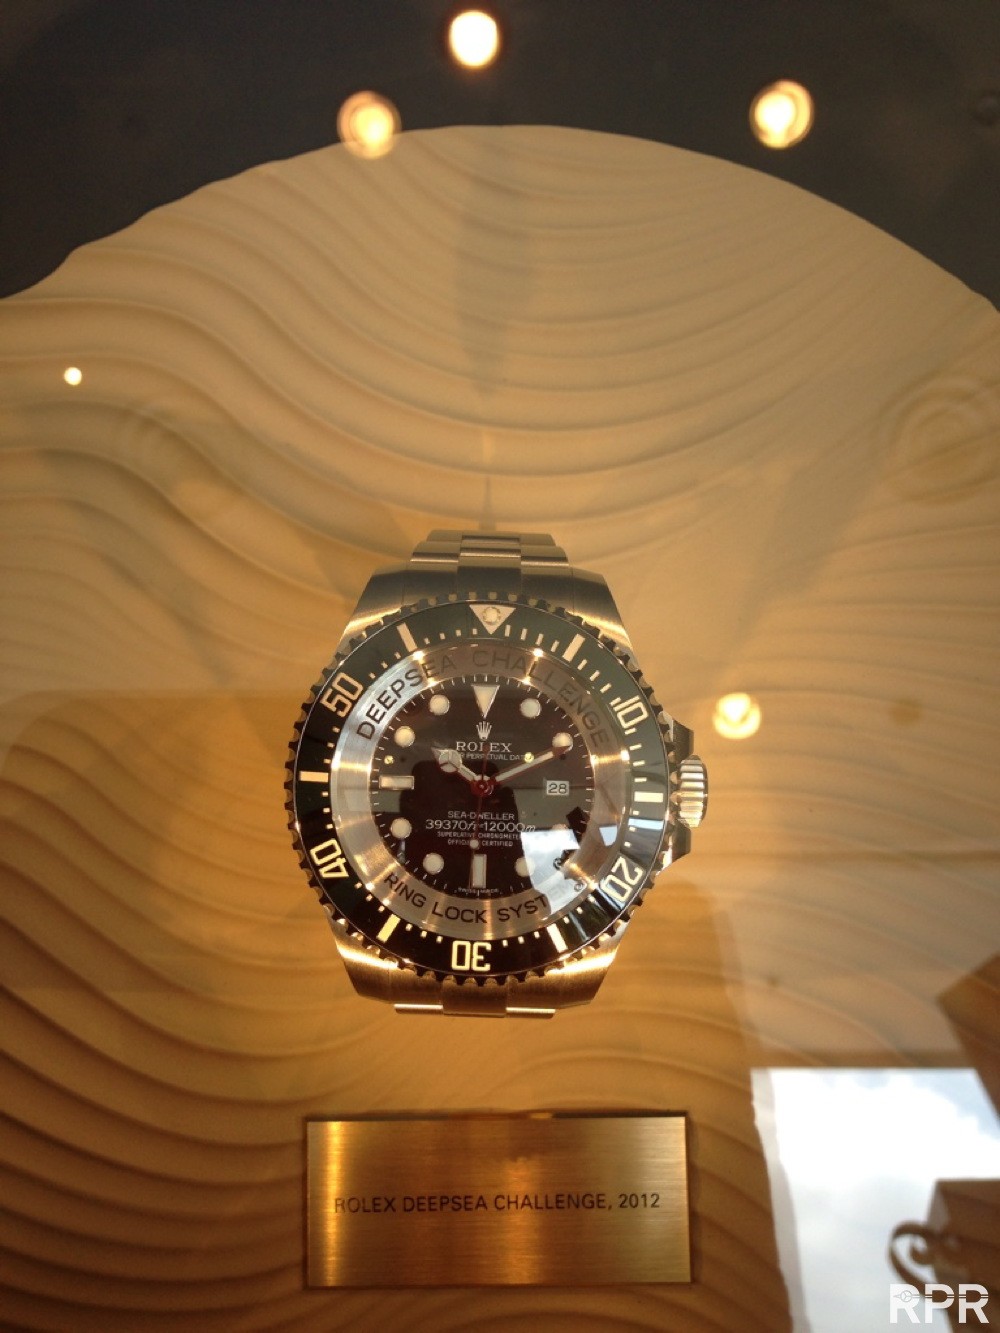 Rolex Deepsea Challenge Watch Goes To Bottom Of The Ocean